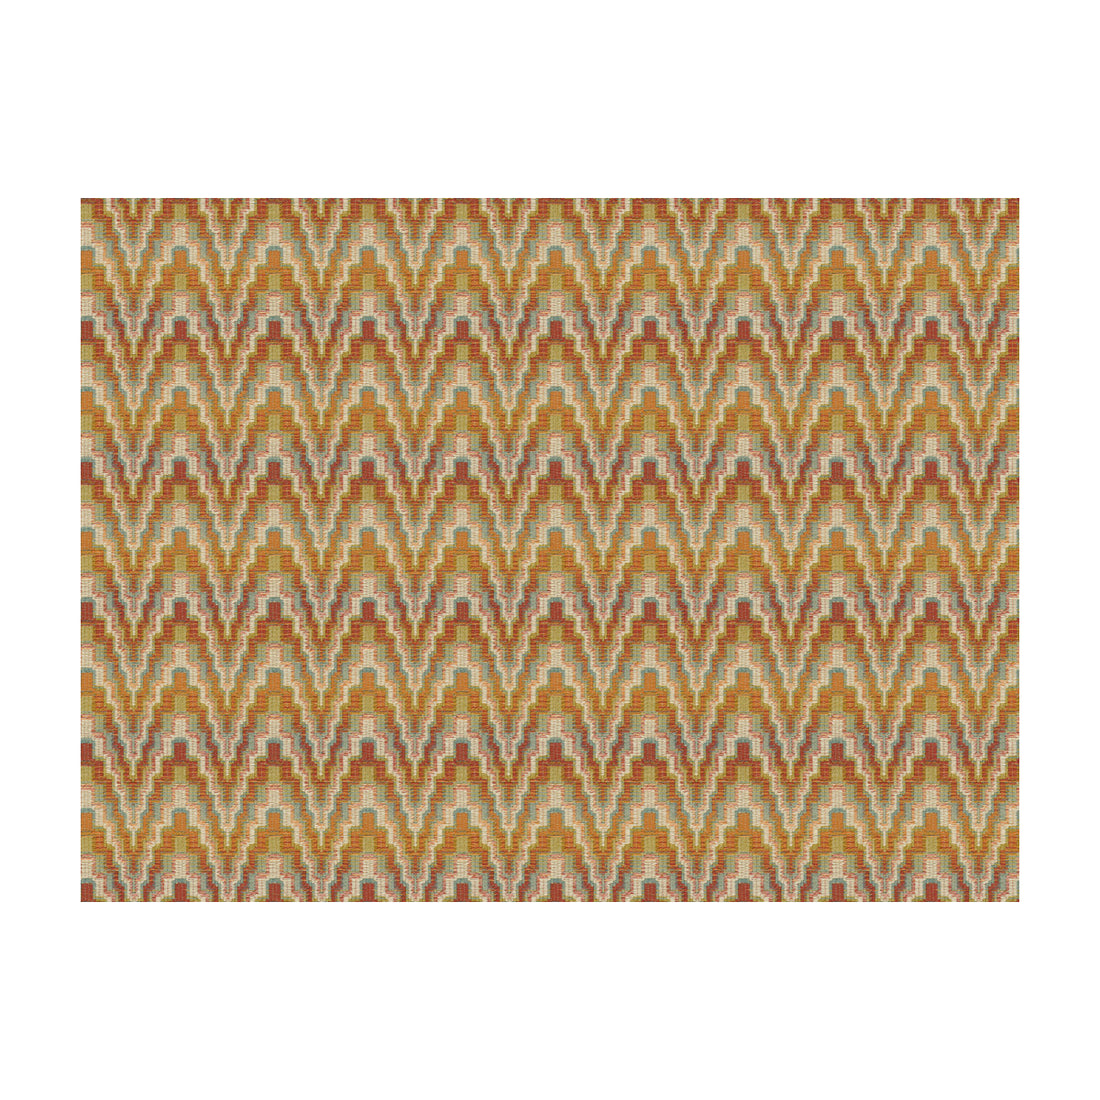 Kravet Design fabric in 33177-312 color - pattern 33177.312.0 - by Kravet Design in the Kravet Colors collection